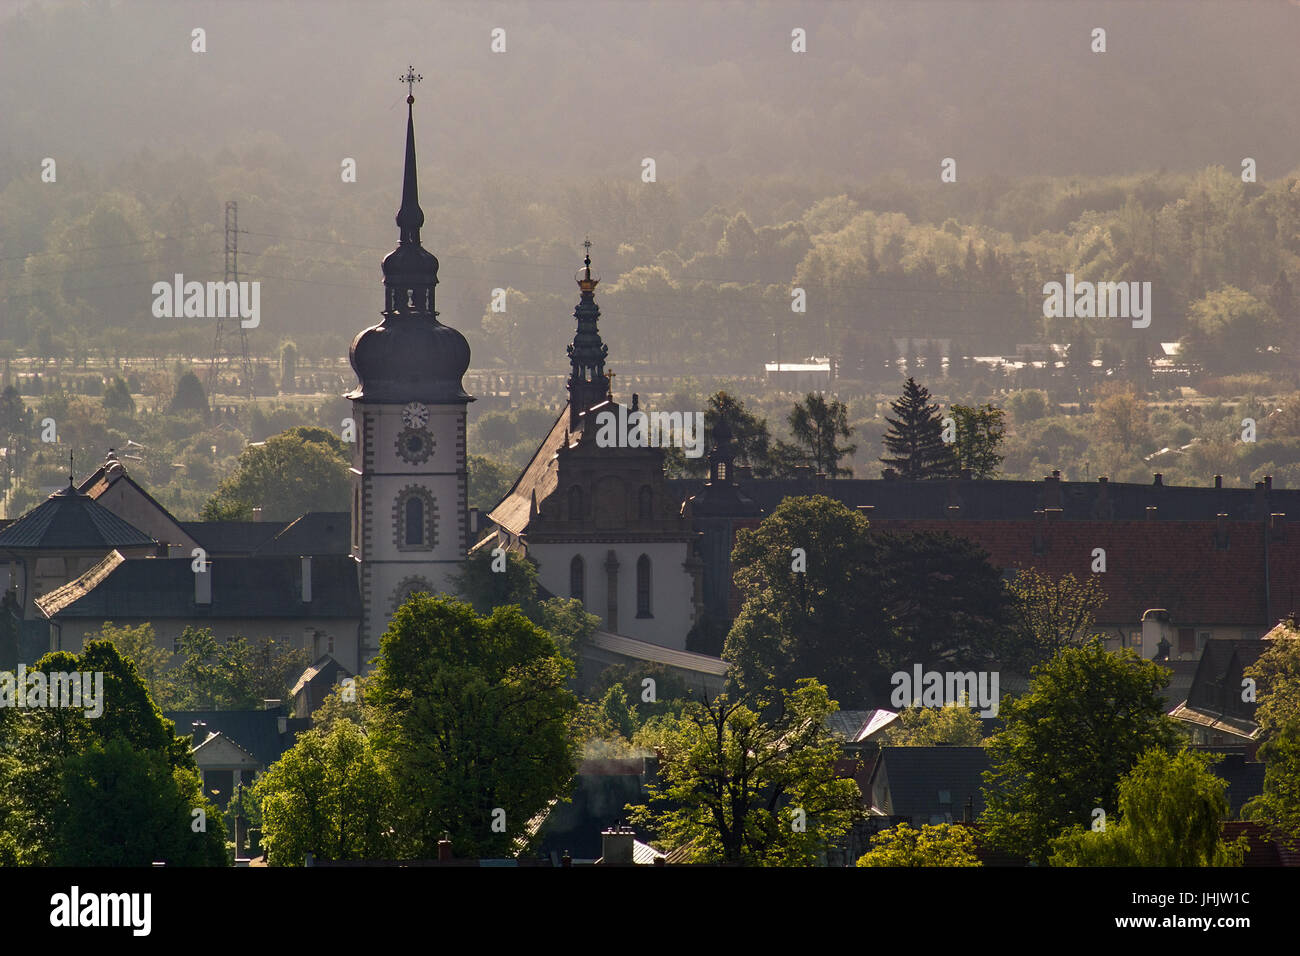 Stary Sacz Stadt bei Sonnenaufgang. Kloster der Klarissen in Stary Sacz, Polen. Stockfoto